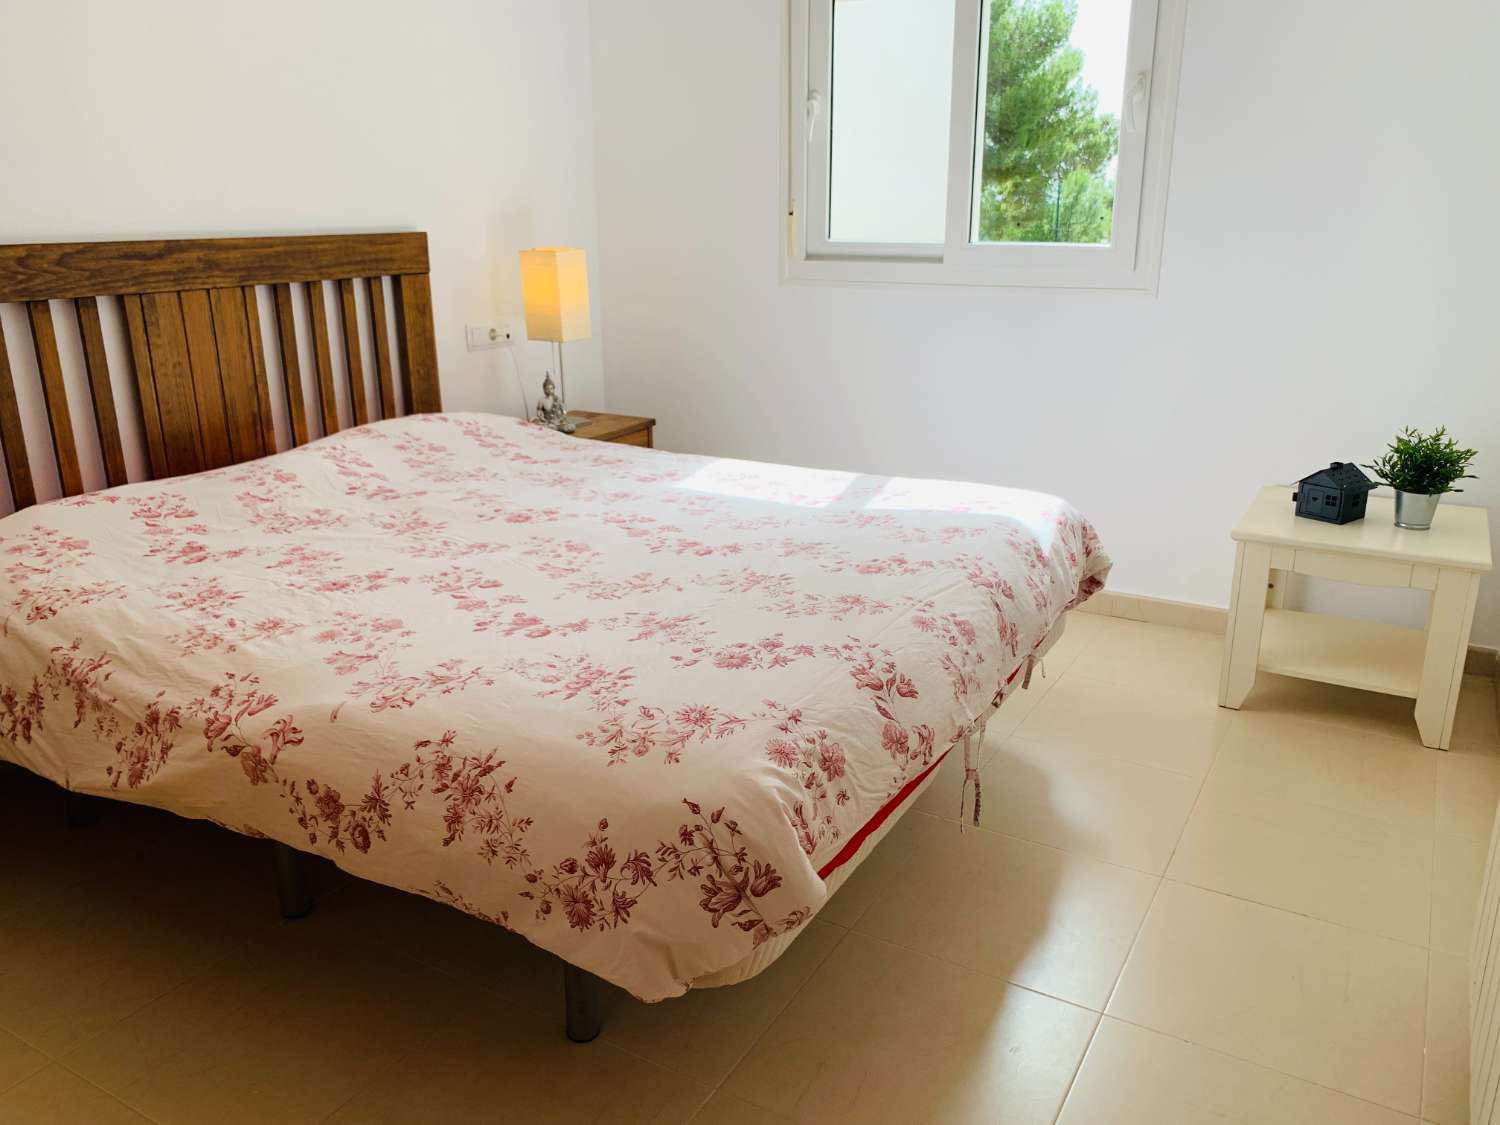 Gelijkvloers appartement voor lange termijn verhuur in Hacienda Riquelme Golf Resort